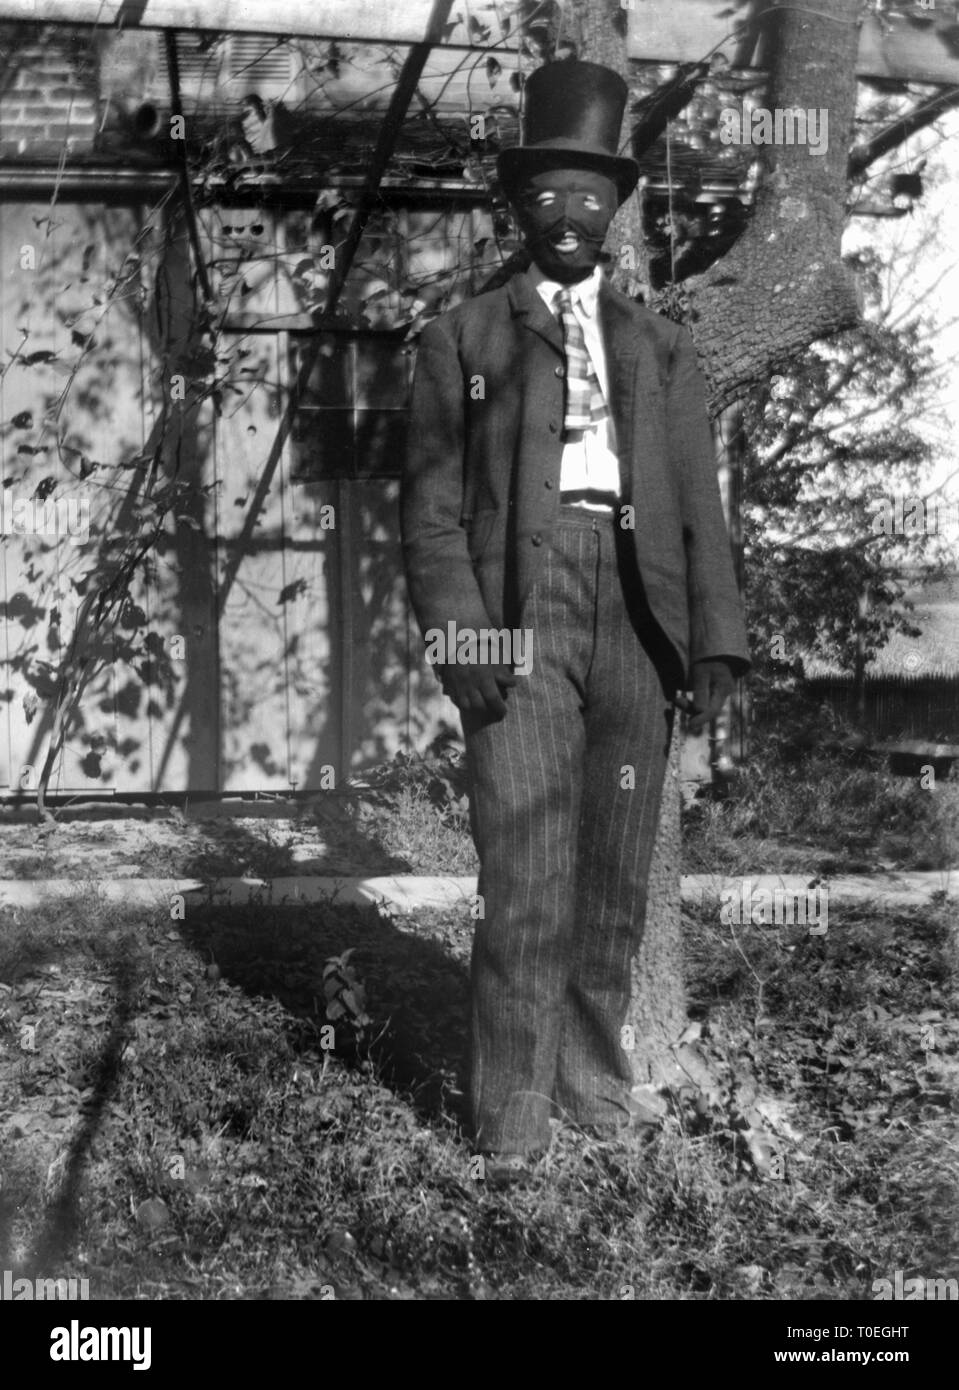 Jahrhundert Mann ganz oben gekleidet mit Maske und Handschuhen, ist Ca. 1910. Stockfoto